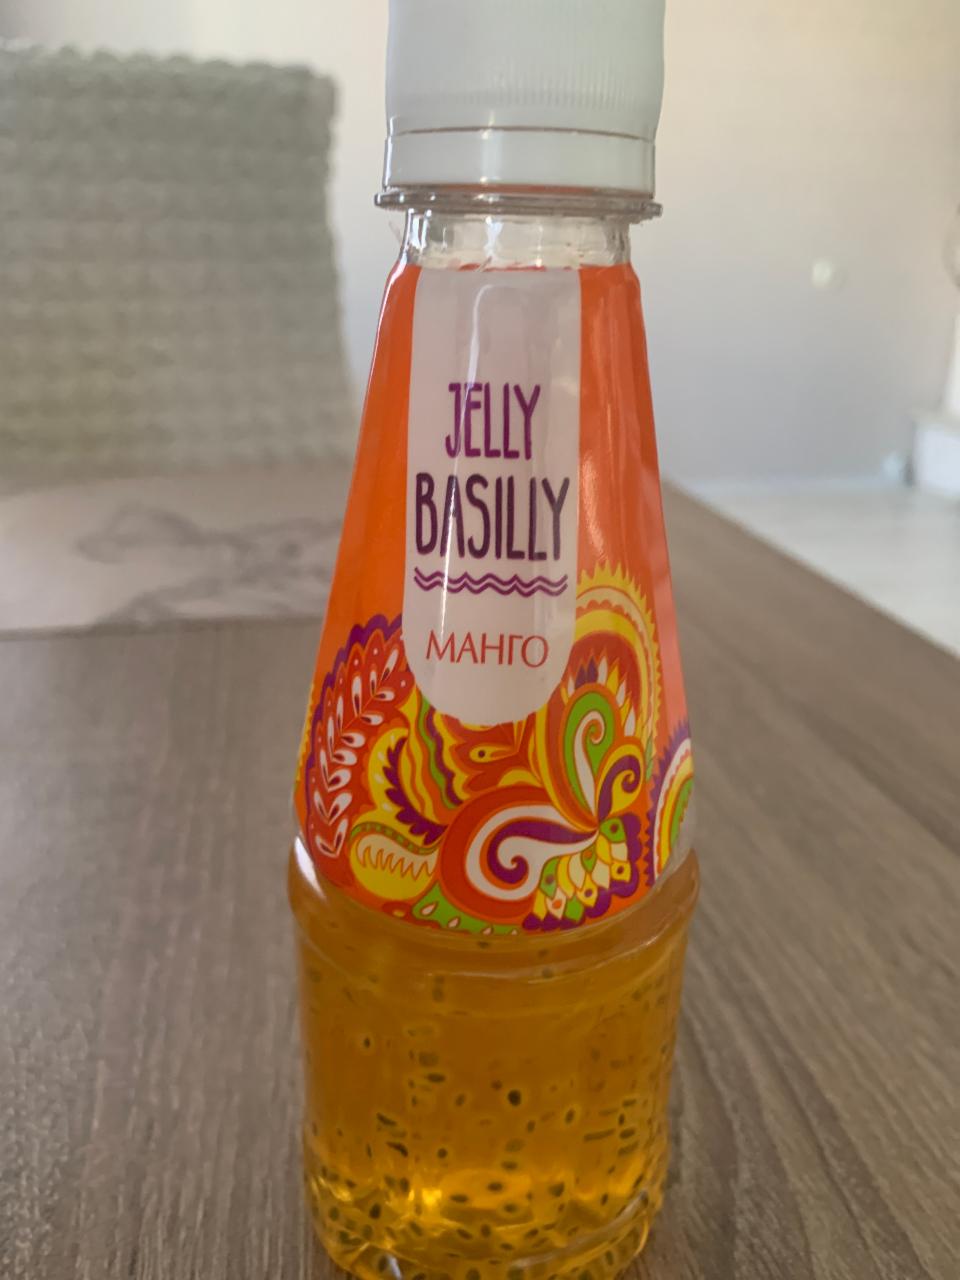 Фото - Напиток с семенами базилика вкус манго Jelly Basilly